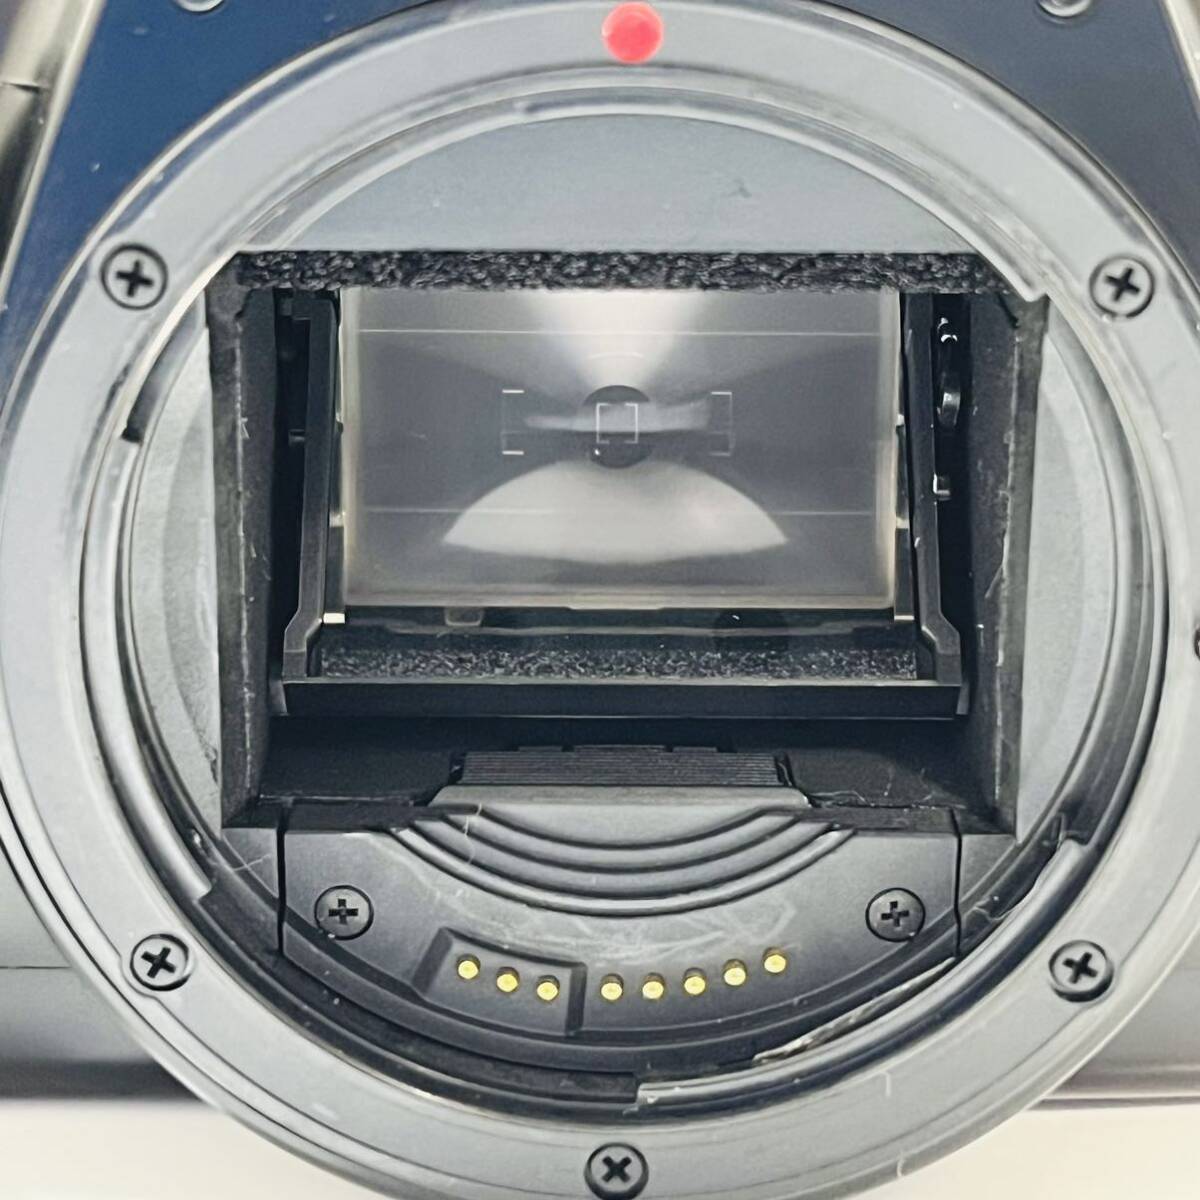 Canonフィルムカメラ EOS Kiss イオス キス キャノン レンズ ULTRASONIC 0.38m/1.3ft AF 28-80mmの画像7